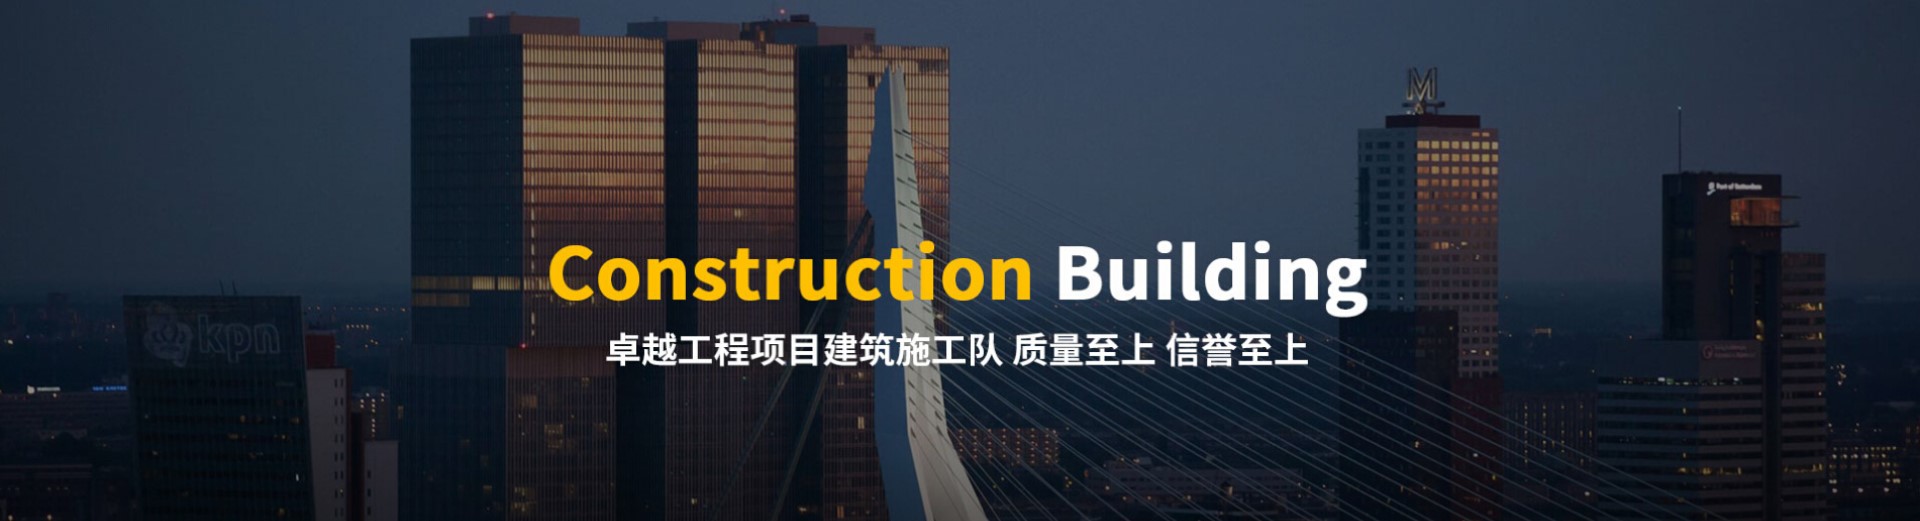 建筑施工公司响应式网站模板案例